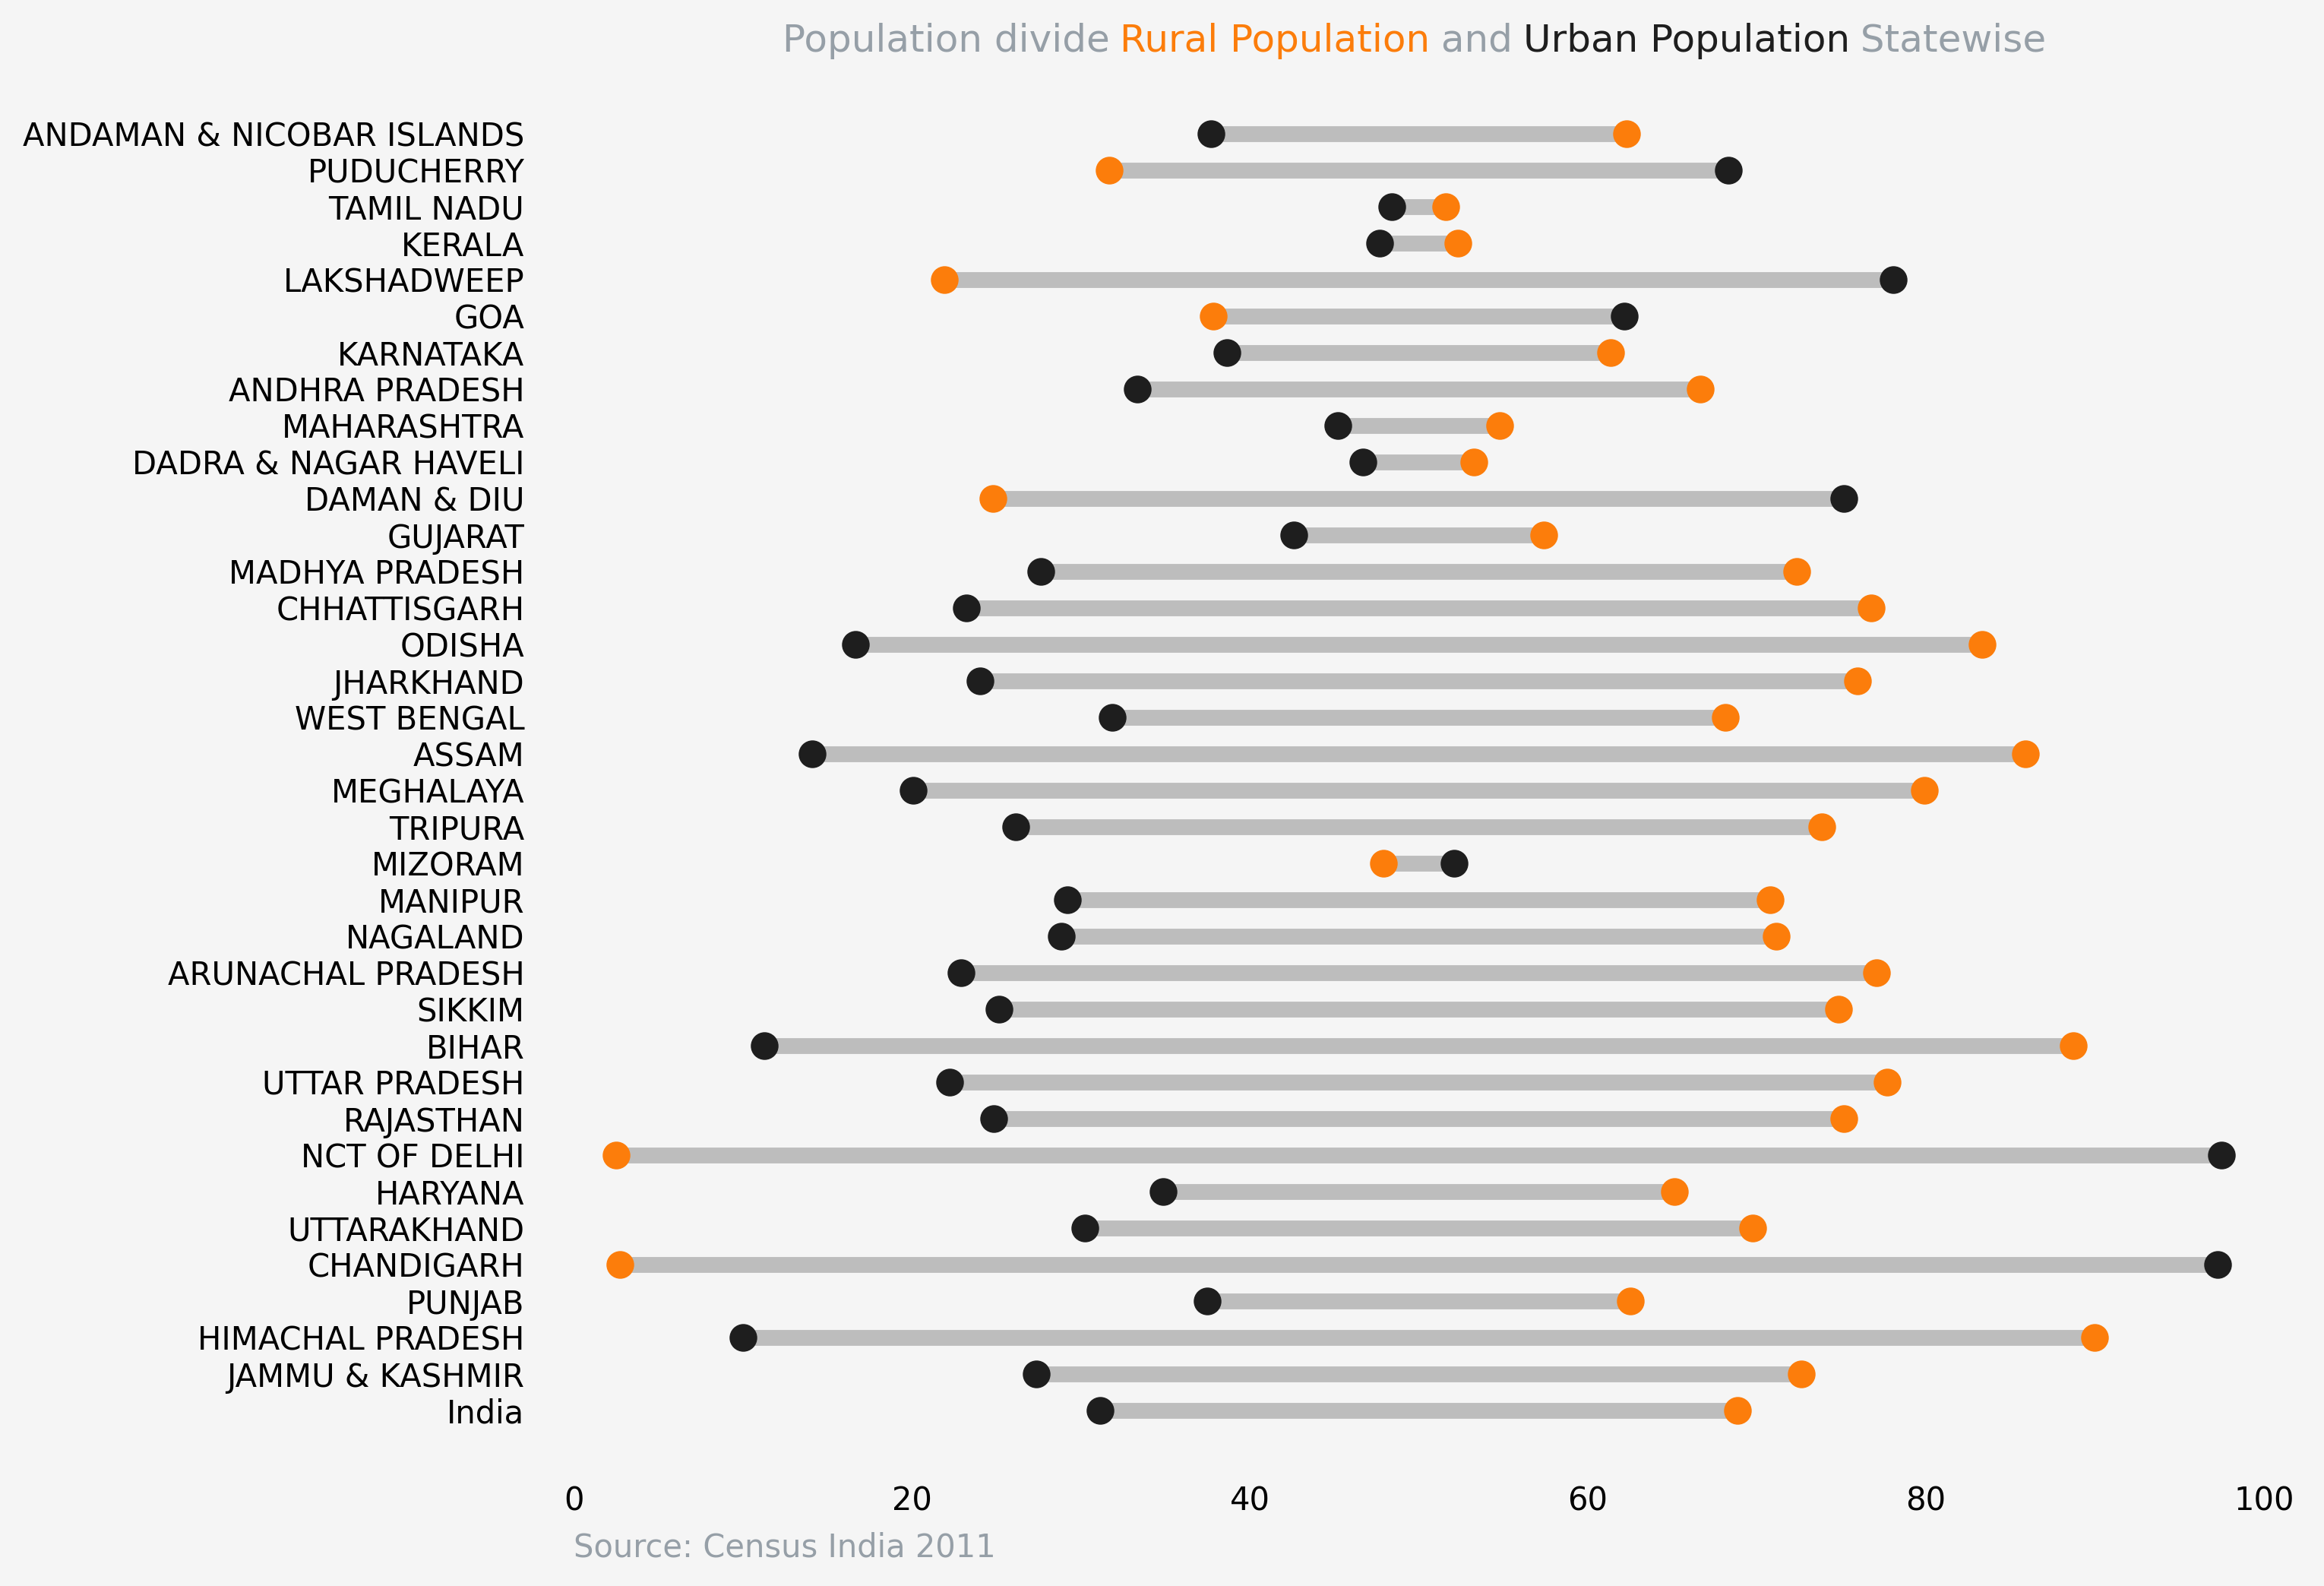 % Population divide Rural vs Urban Statewise